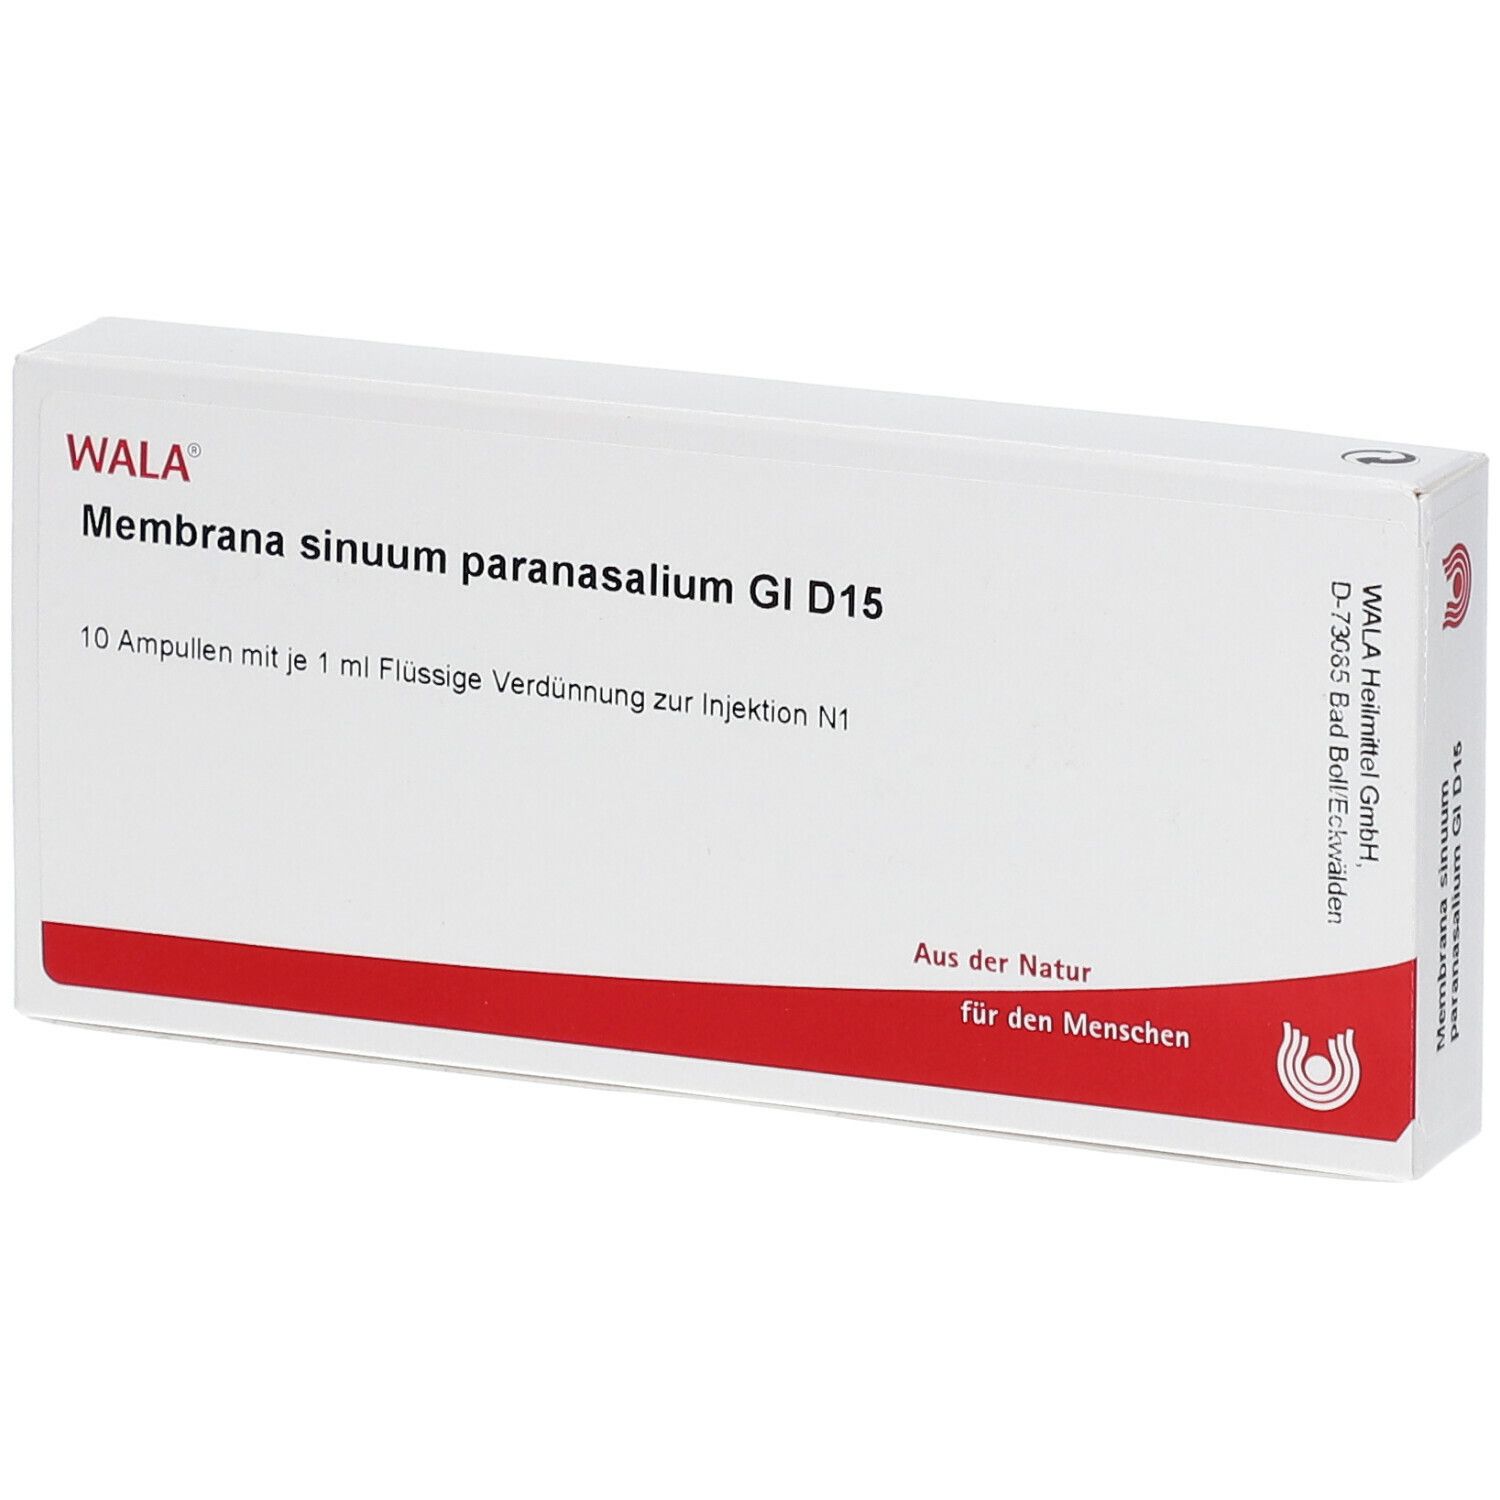 Wala® Membrana sinuum paranasalium Gl D 15